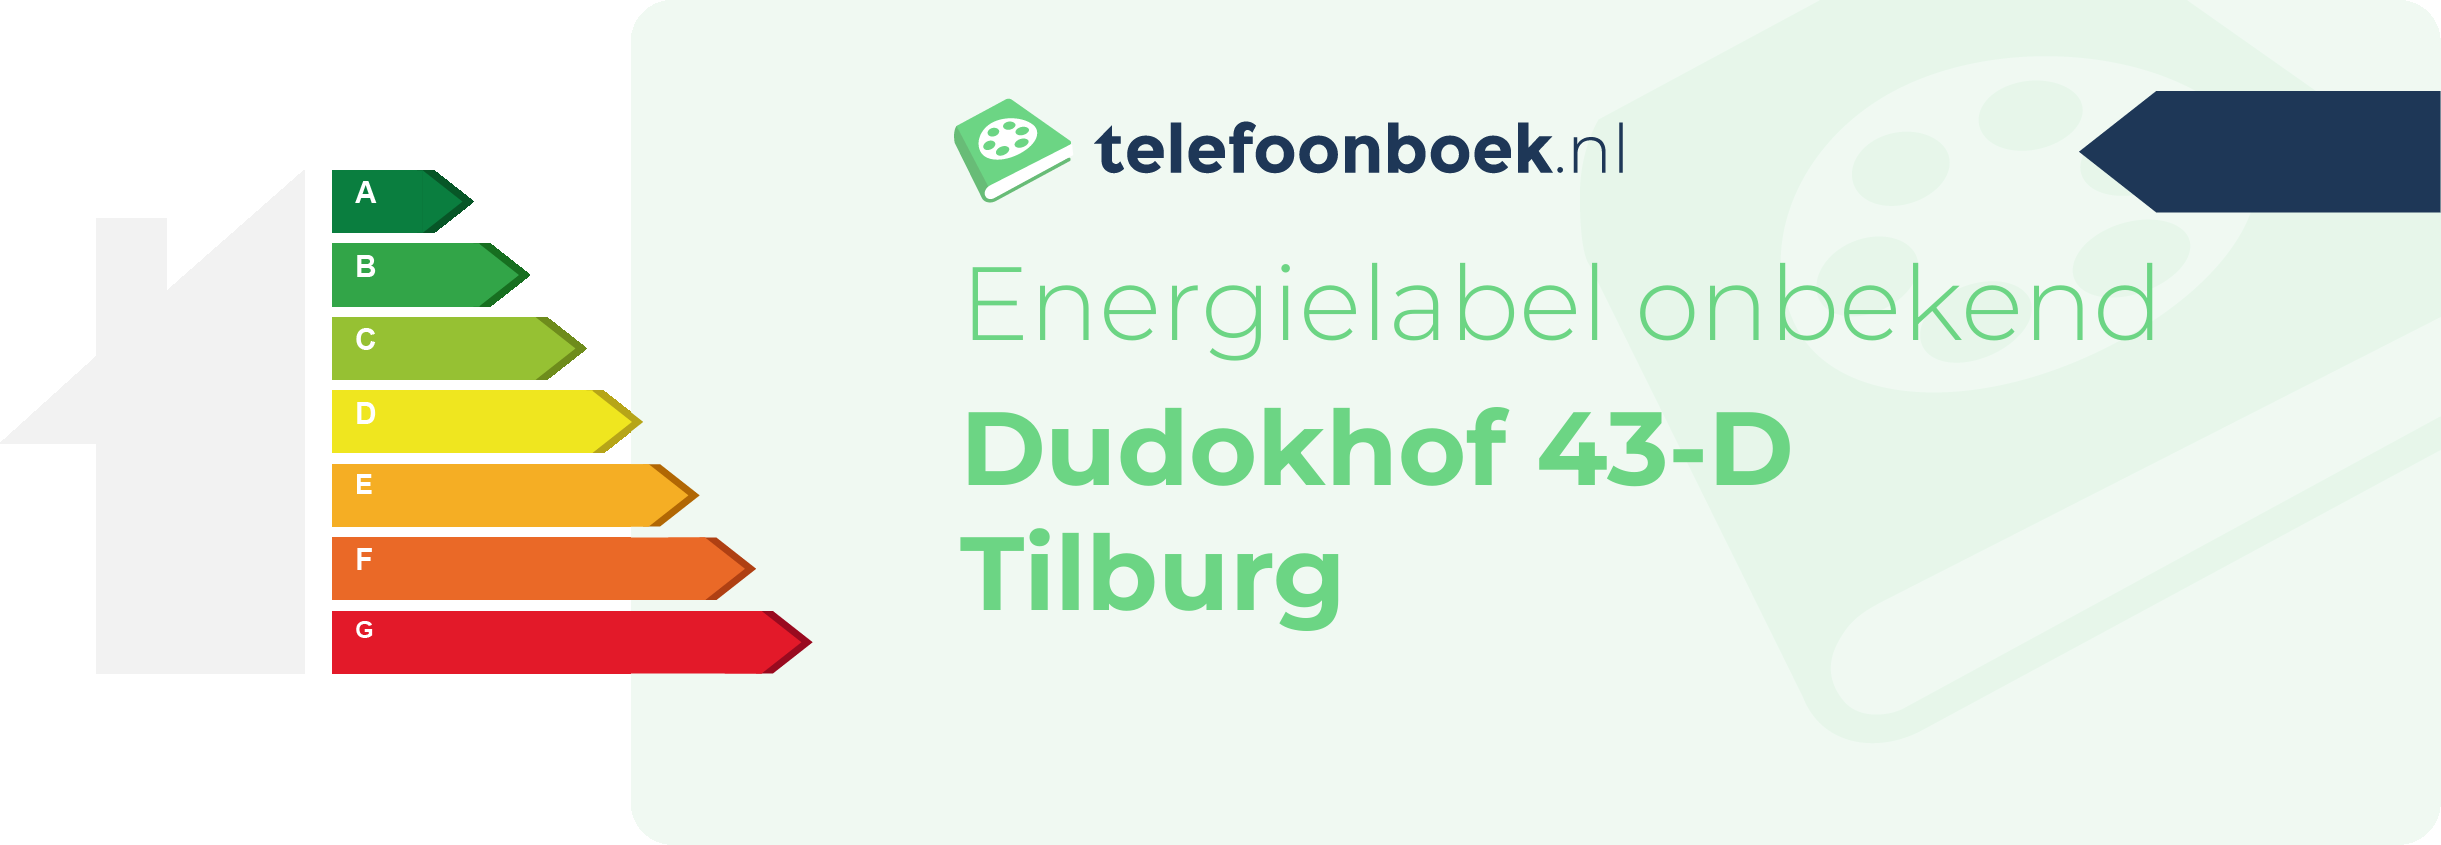 Energielabel Dudokhof 43-D Tilburg